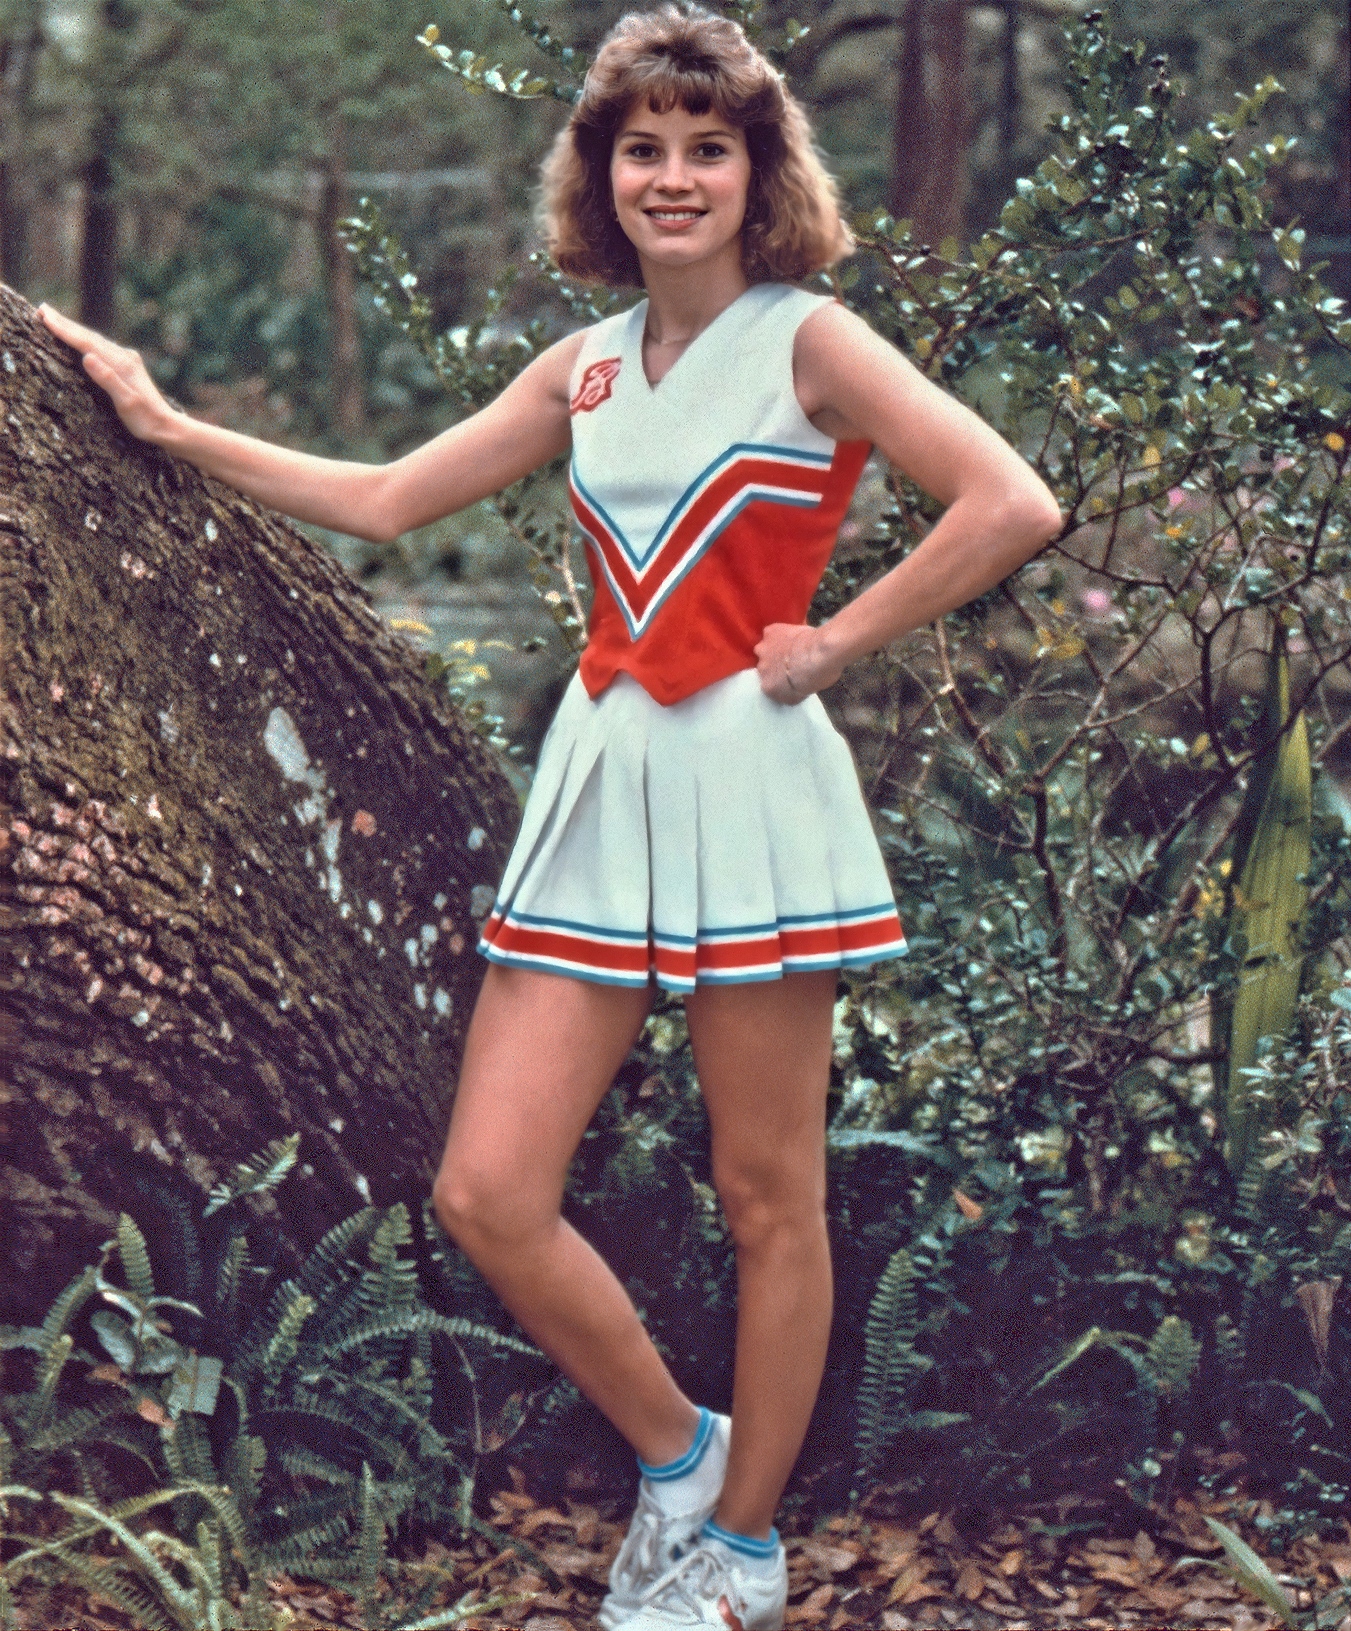 Cheerleader - Carol beside tree, 1987